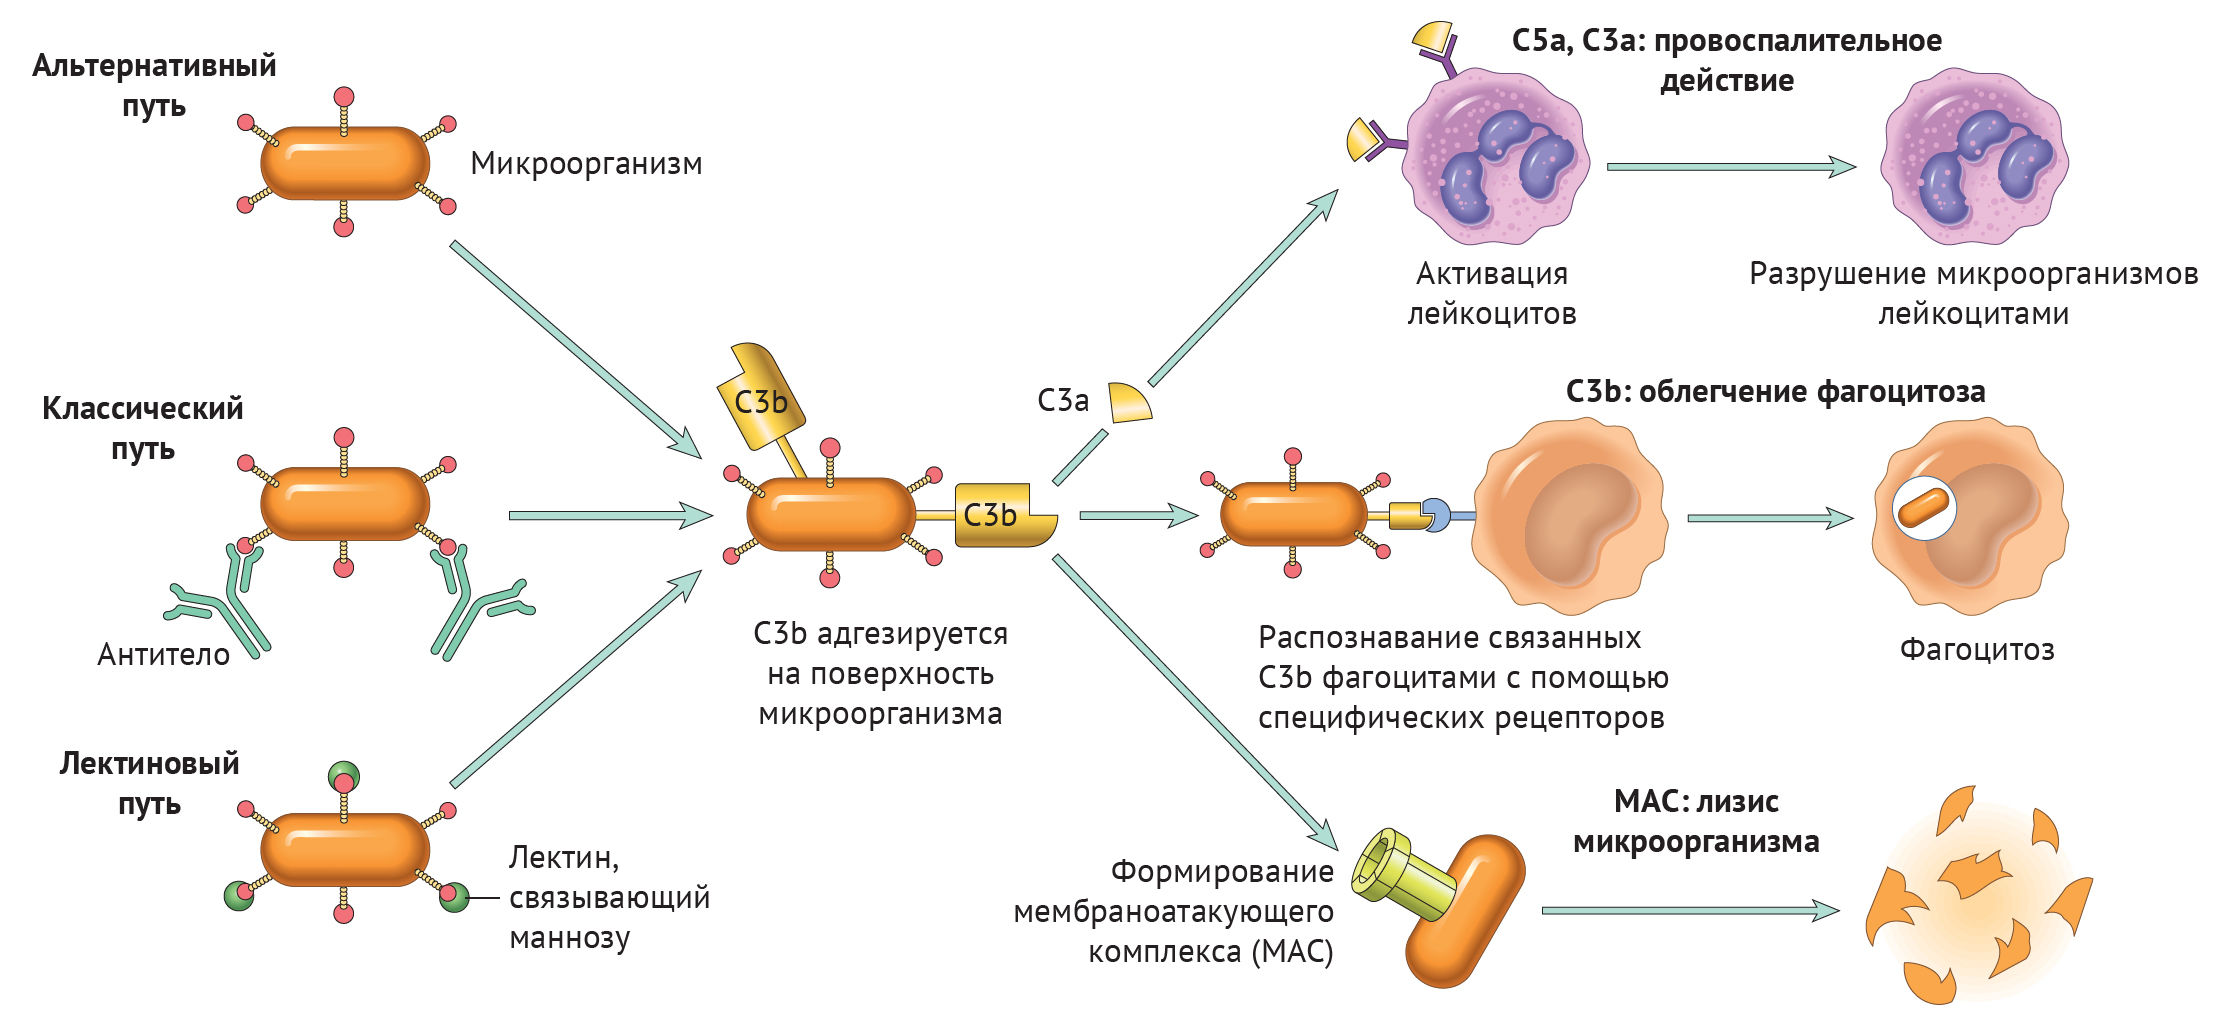 Комплемент сыворотки крови. Активация системы комплемента с3. Функции белков системы комплемента иммунология. Цитолитическая функция системы комплемента. Функции иммунного комплемента.